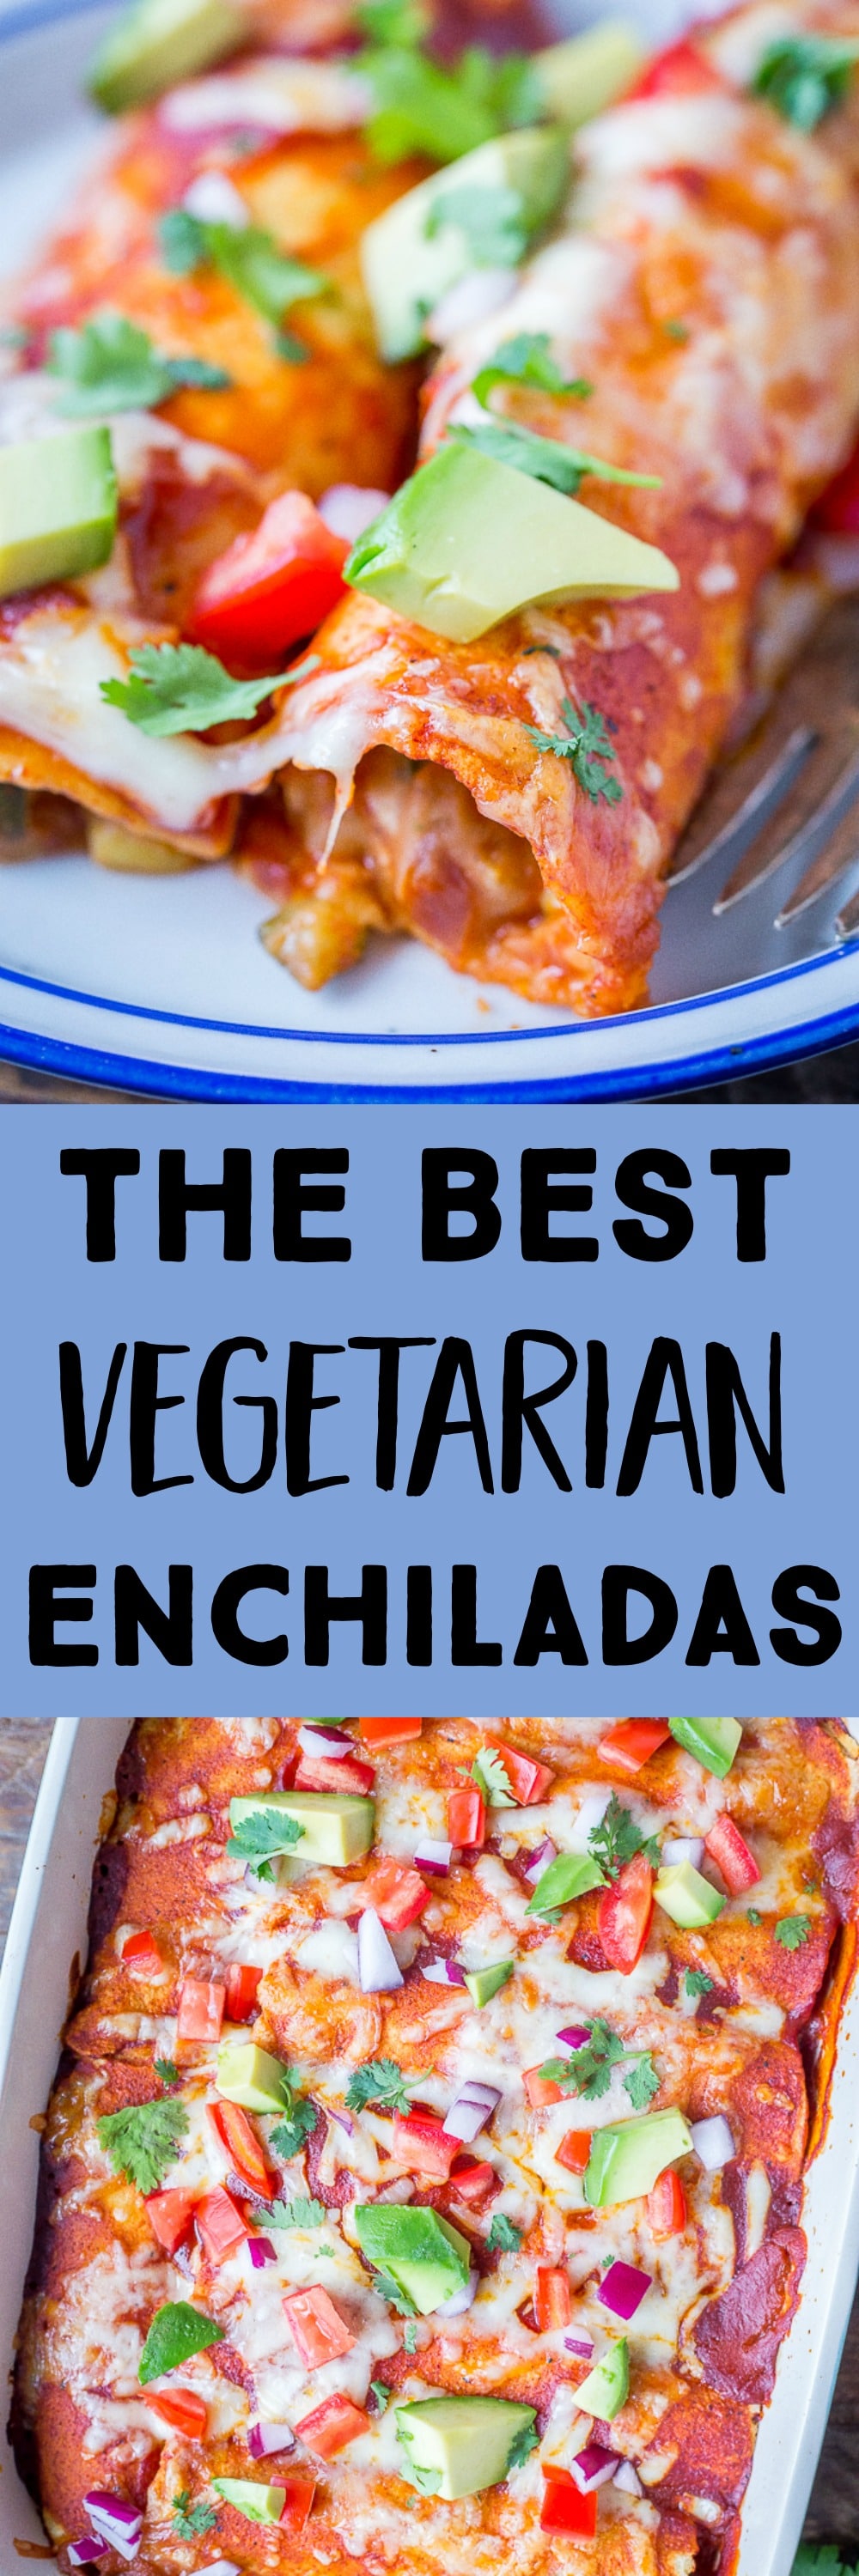 The Best Vegetarian Enchiladas - She Likes Food